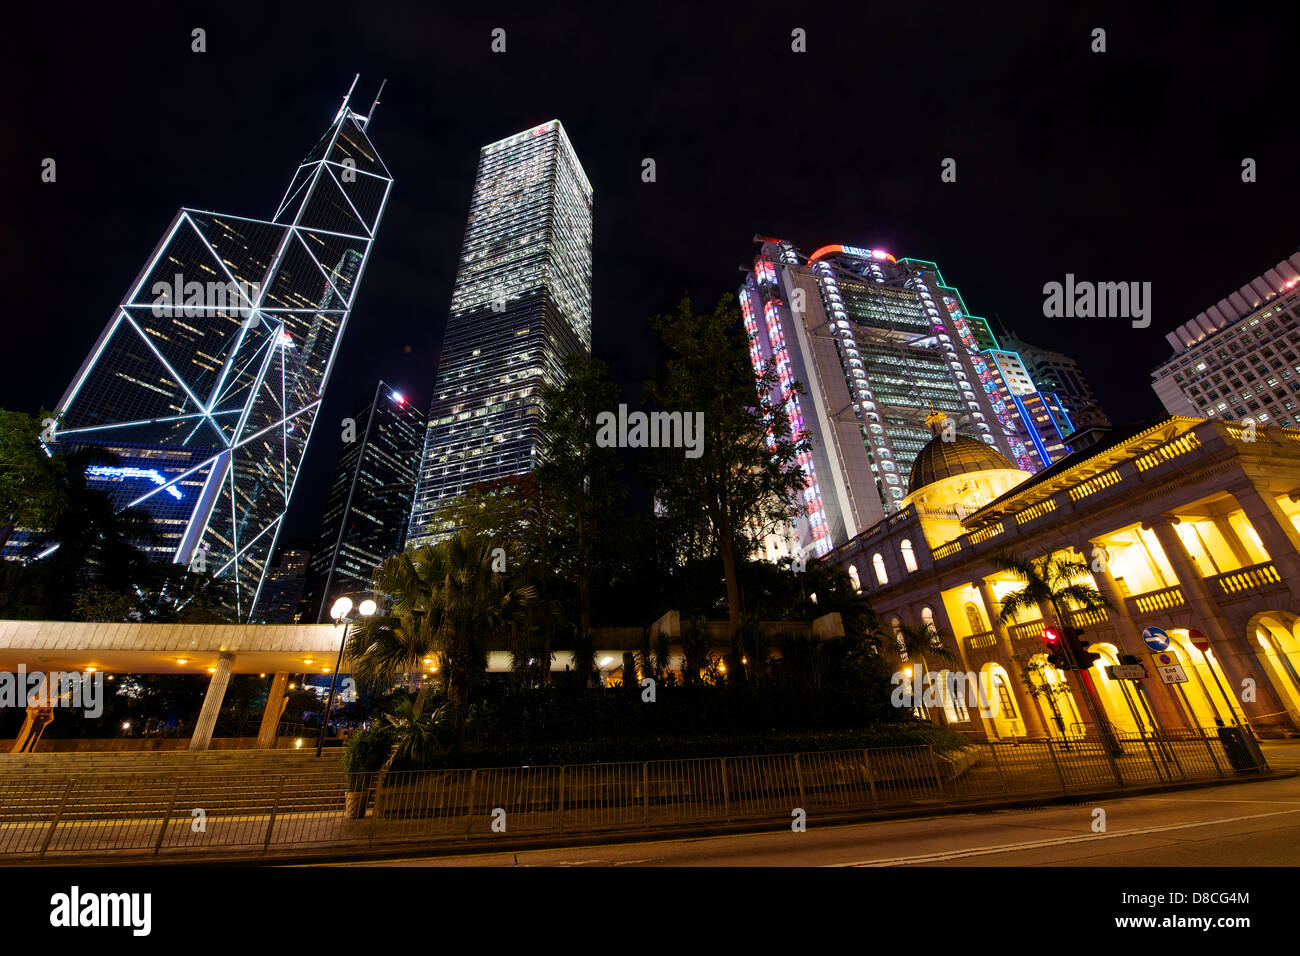 Vue sur le centre de la nuit près de l'ancien bâtiment legco. dans l'arrière-plan, la Banque de Chine et siège de la HSBC. Banque D'Images